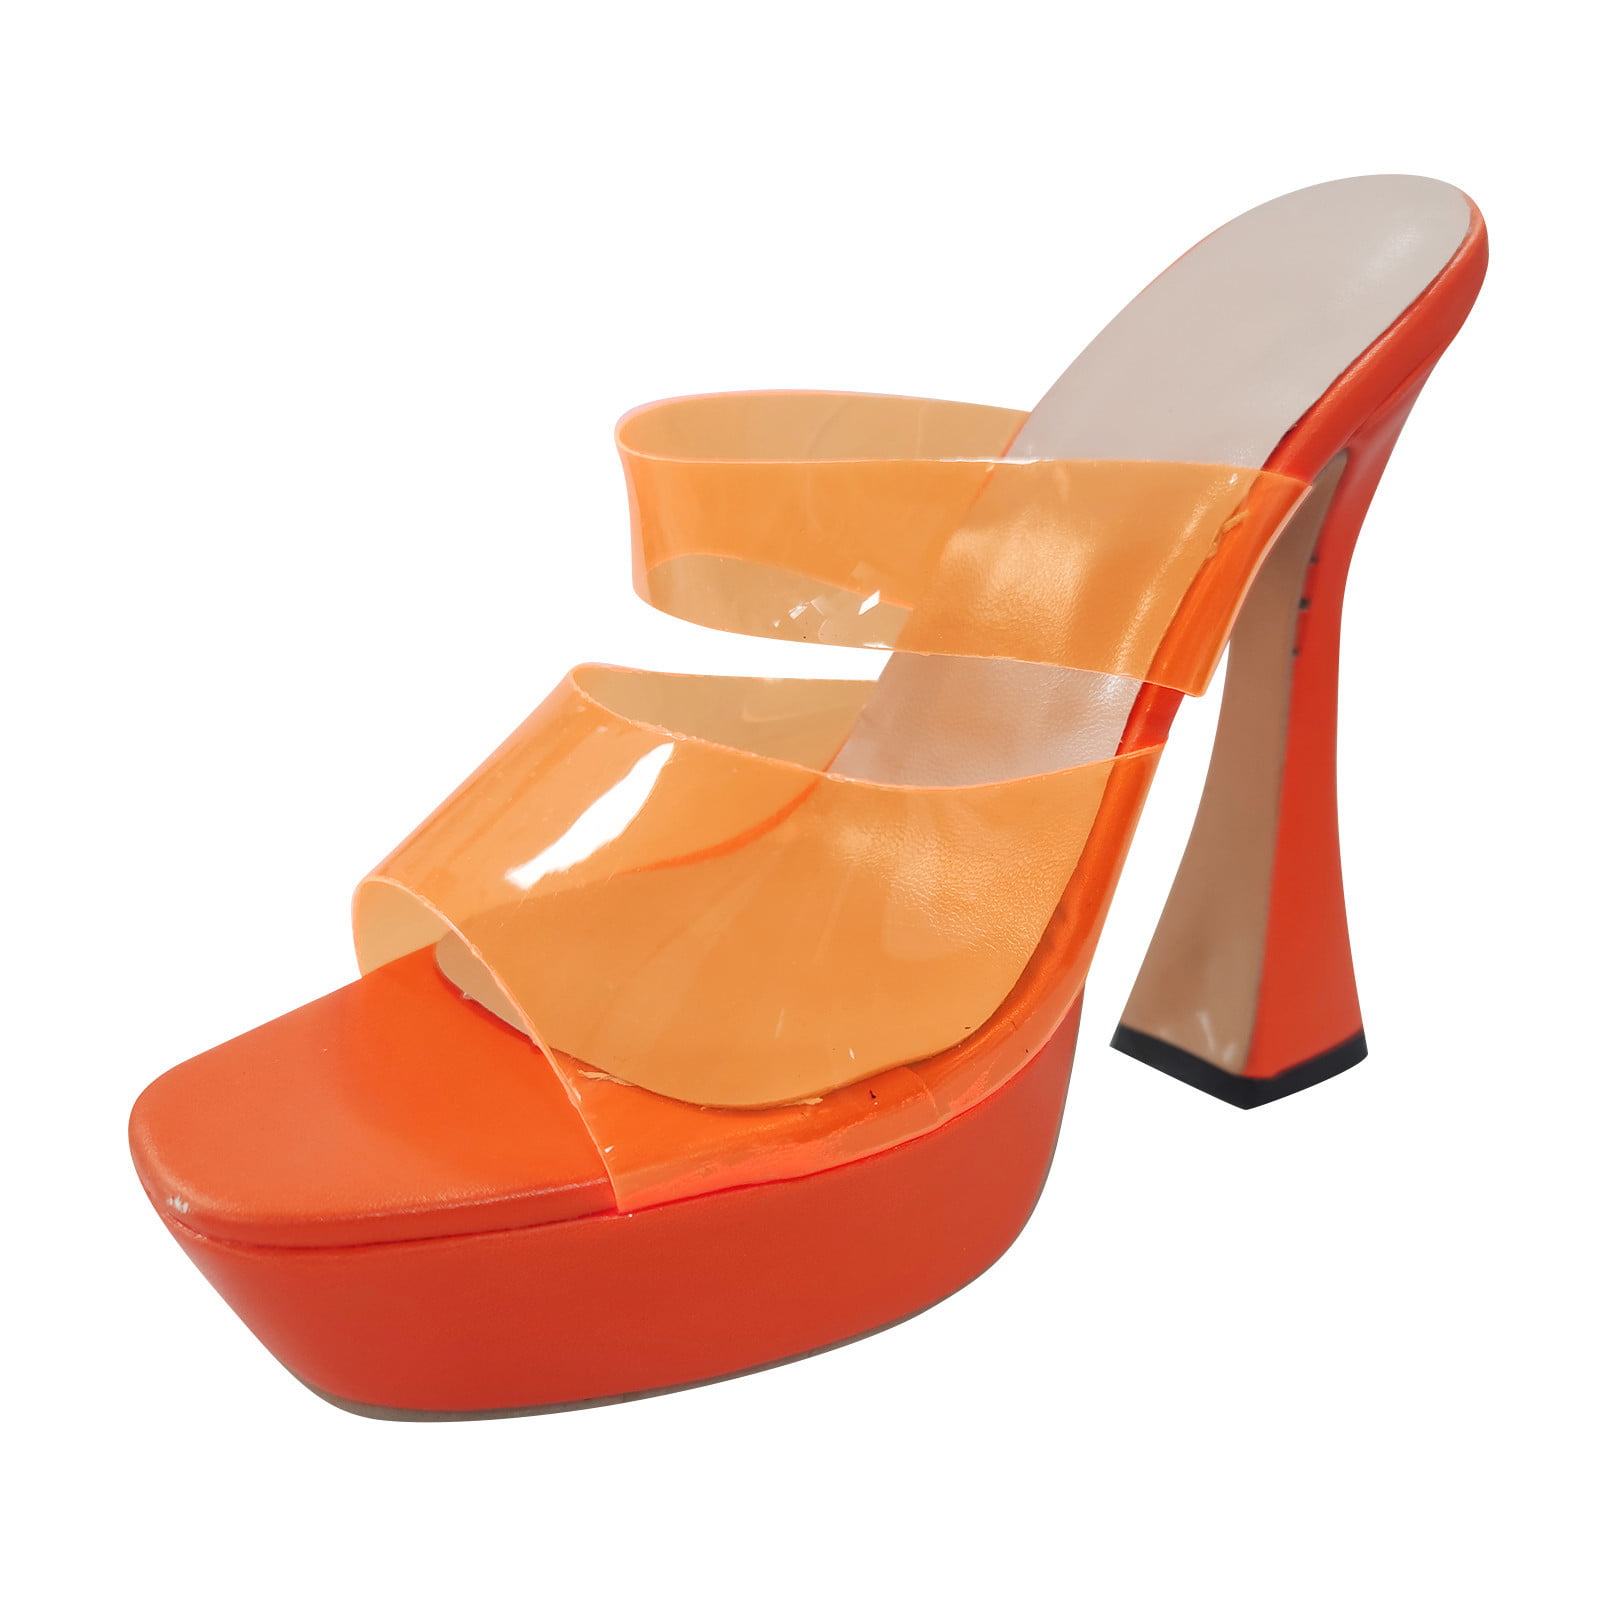 The Queen 3 inch heel size 13 – Shop Wildside